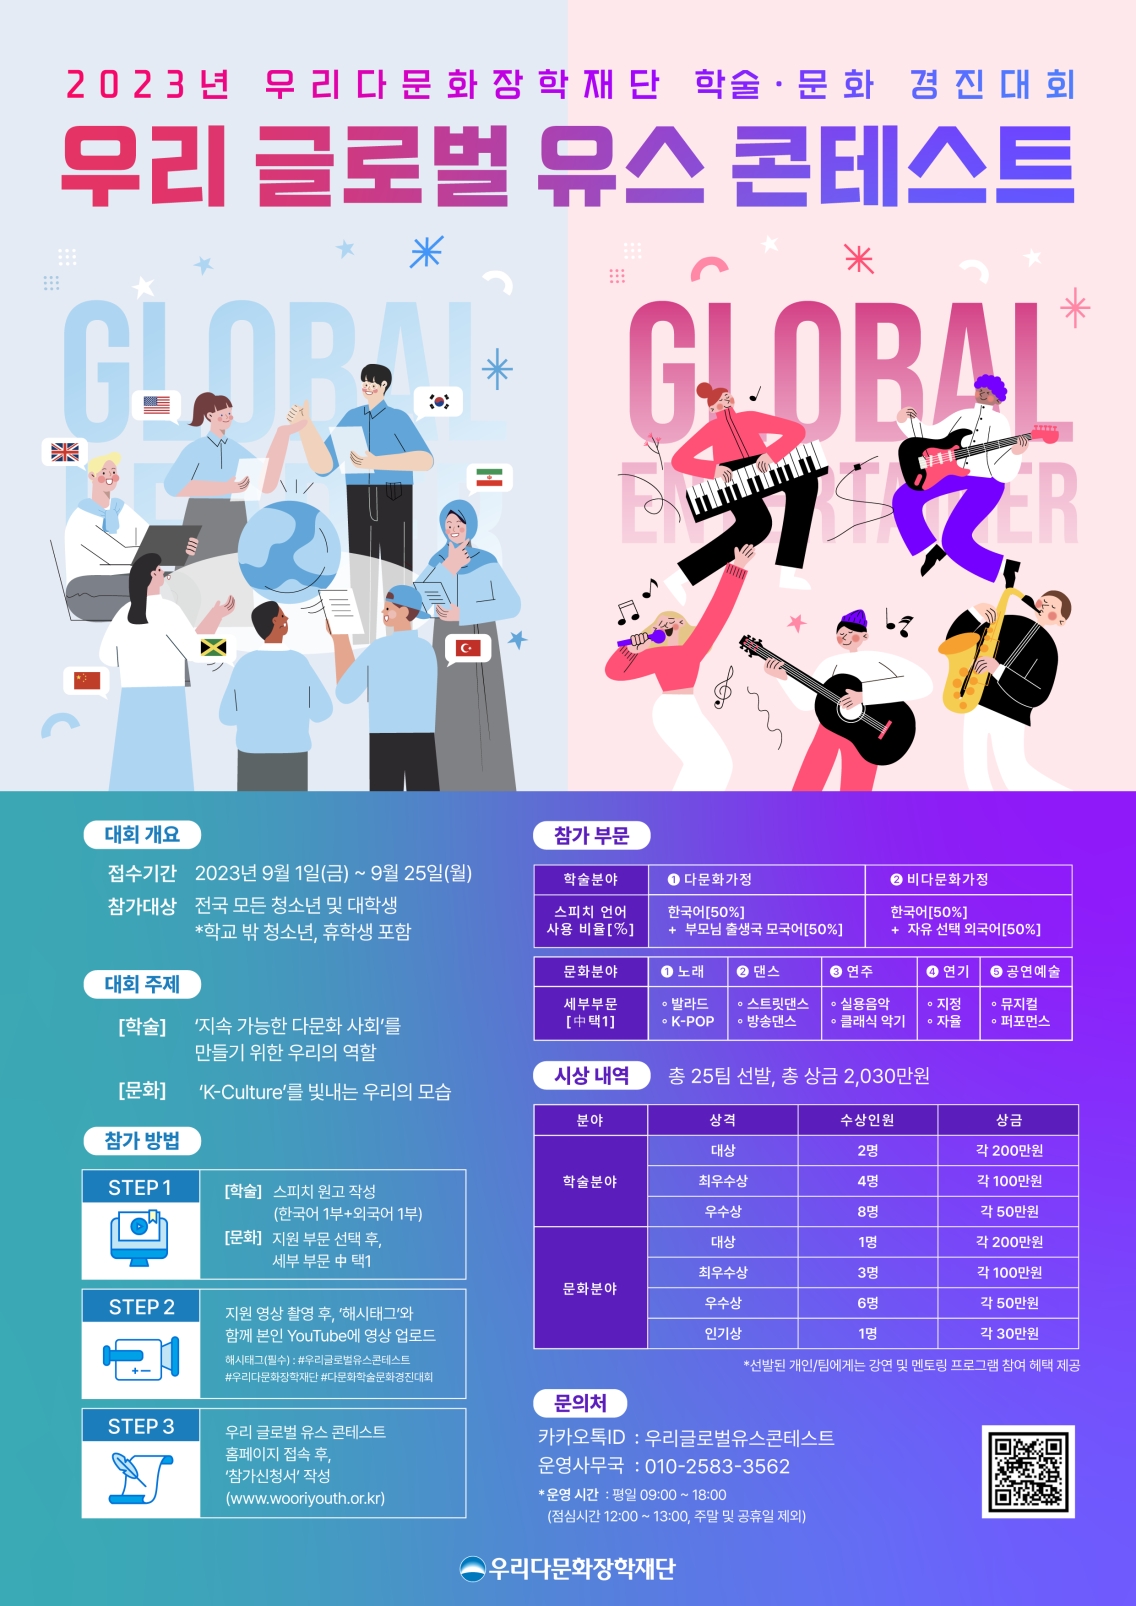 우리다문화장학재단, 글로벌 리더 발굴 위한 학술·문화 콘테스트 개최